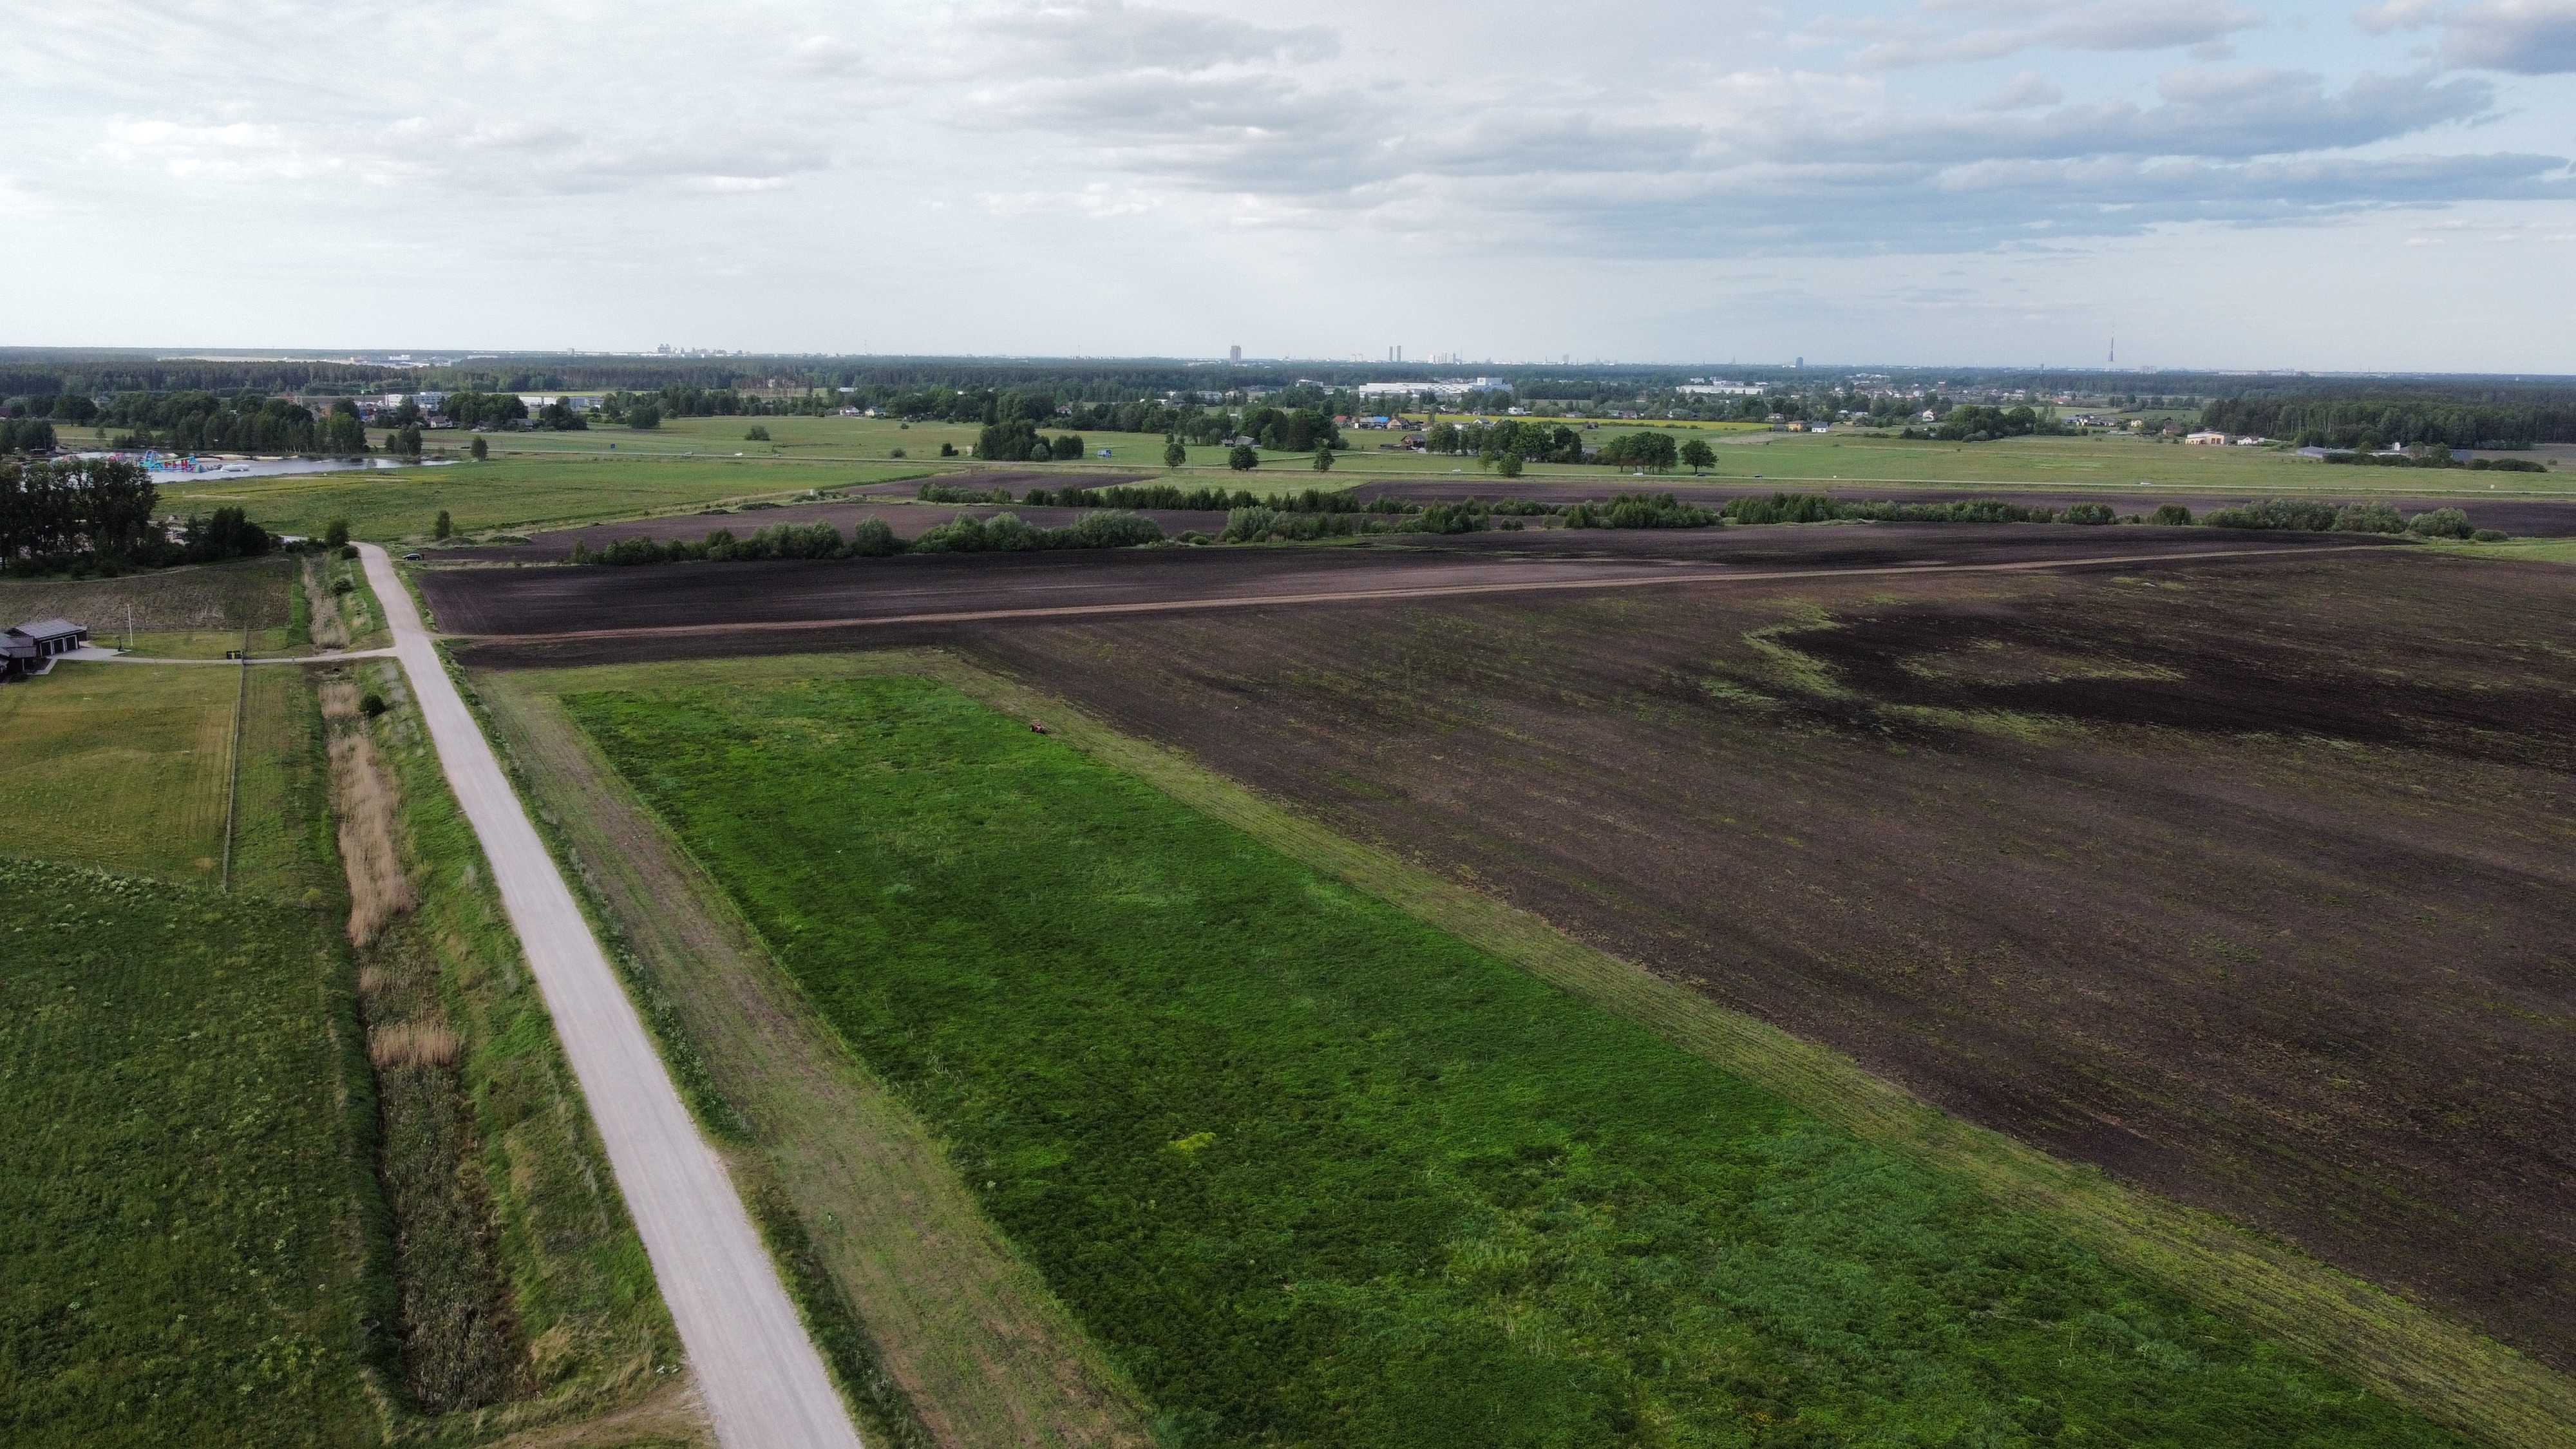 Продают земельный участок, A5 Rīgas apvadceļš (Salaspils - Babīte) - Изображение 1